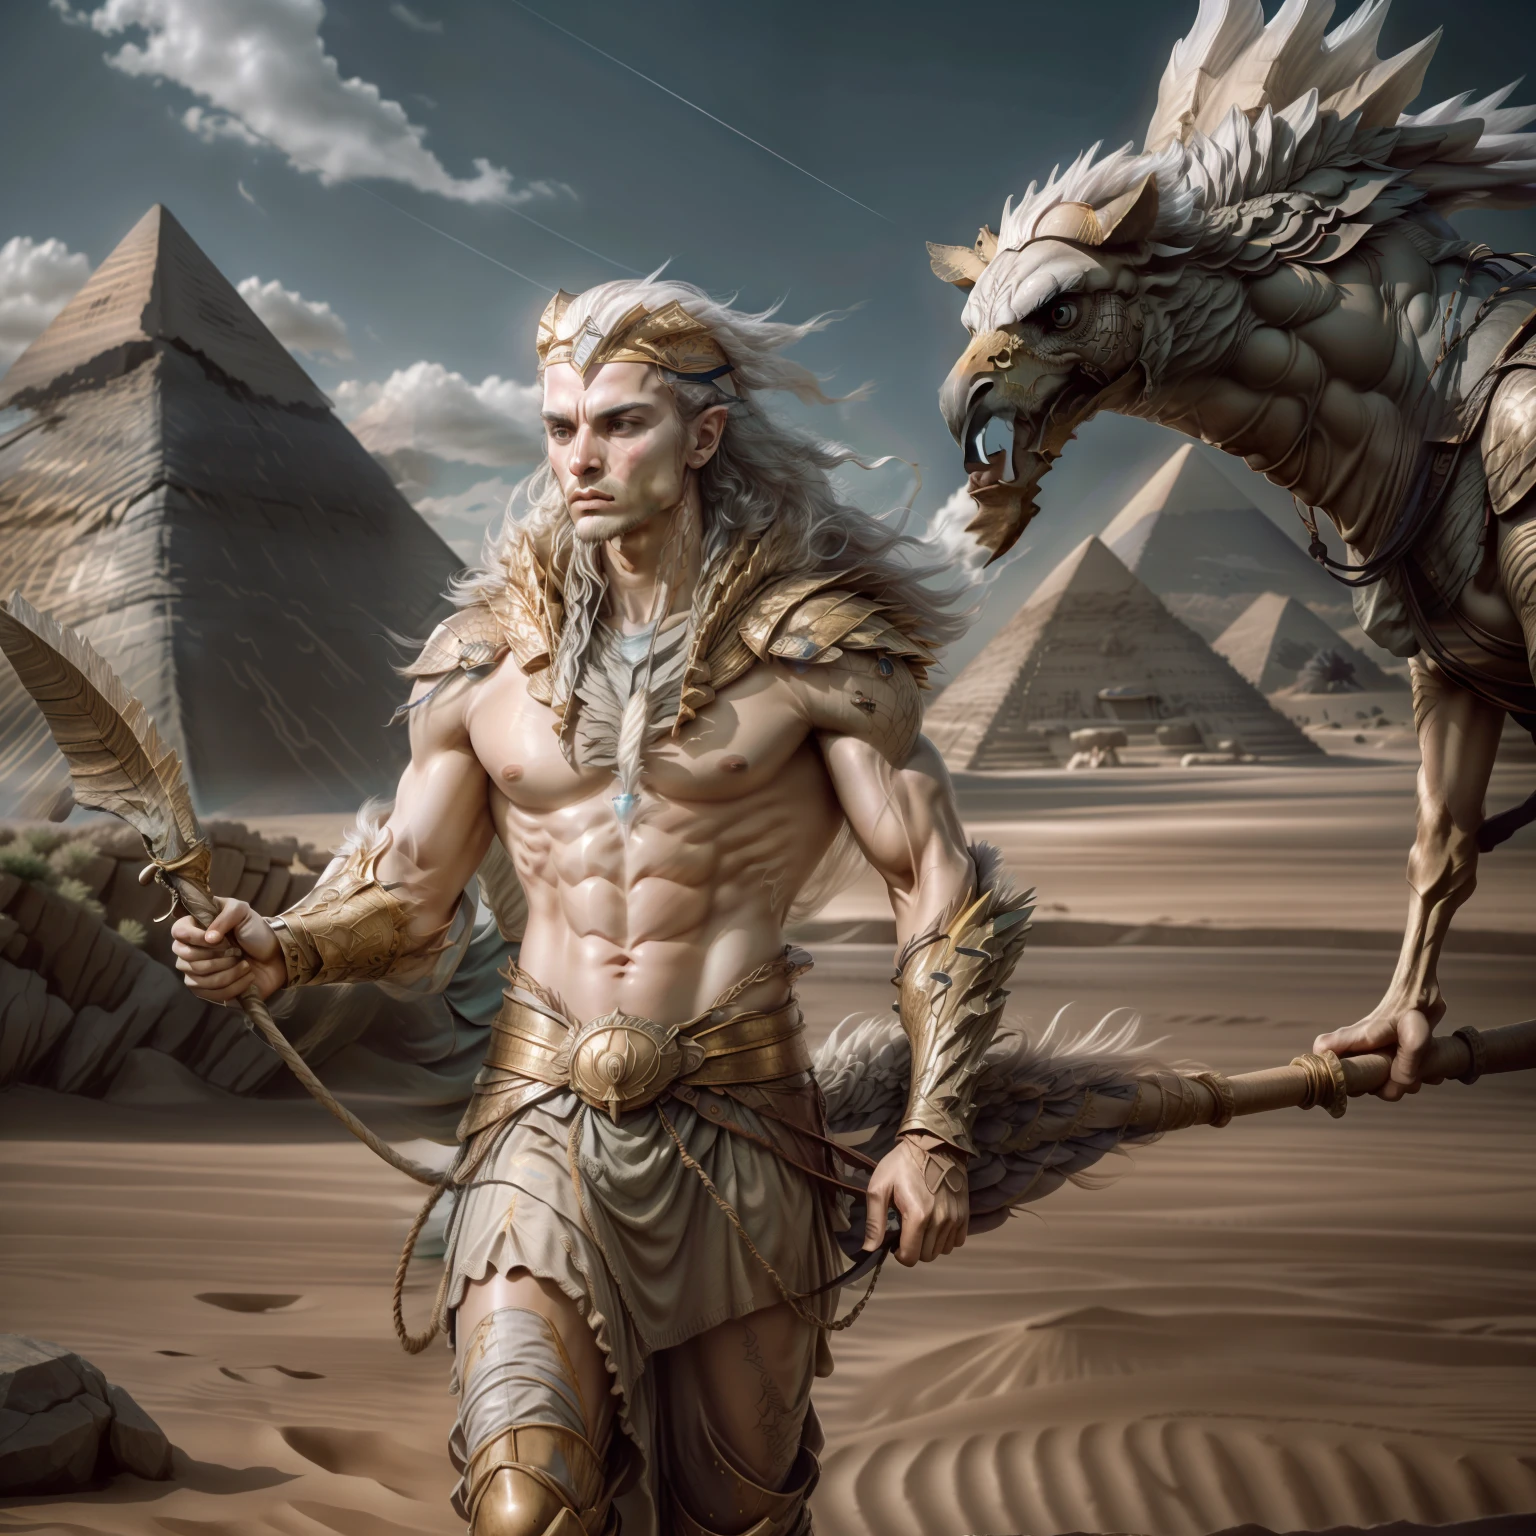 Ammon, Adlerkopf, starker Körper, 5 Finger an den Händen, hält einen Stab, 18k, ultra-realistisch, Ägyptisches Szenario, mit Pyramiden dahinter, Wüste, Kamele, leichter Wind, --Auto